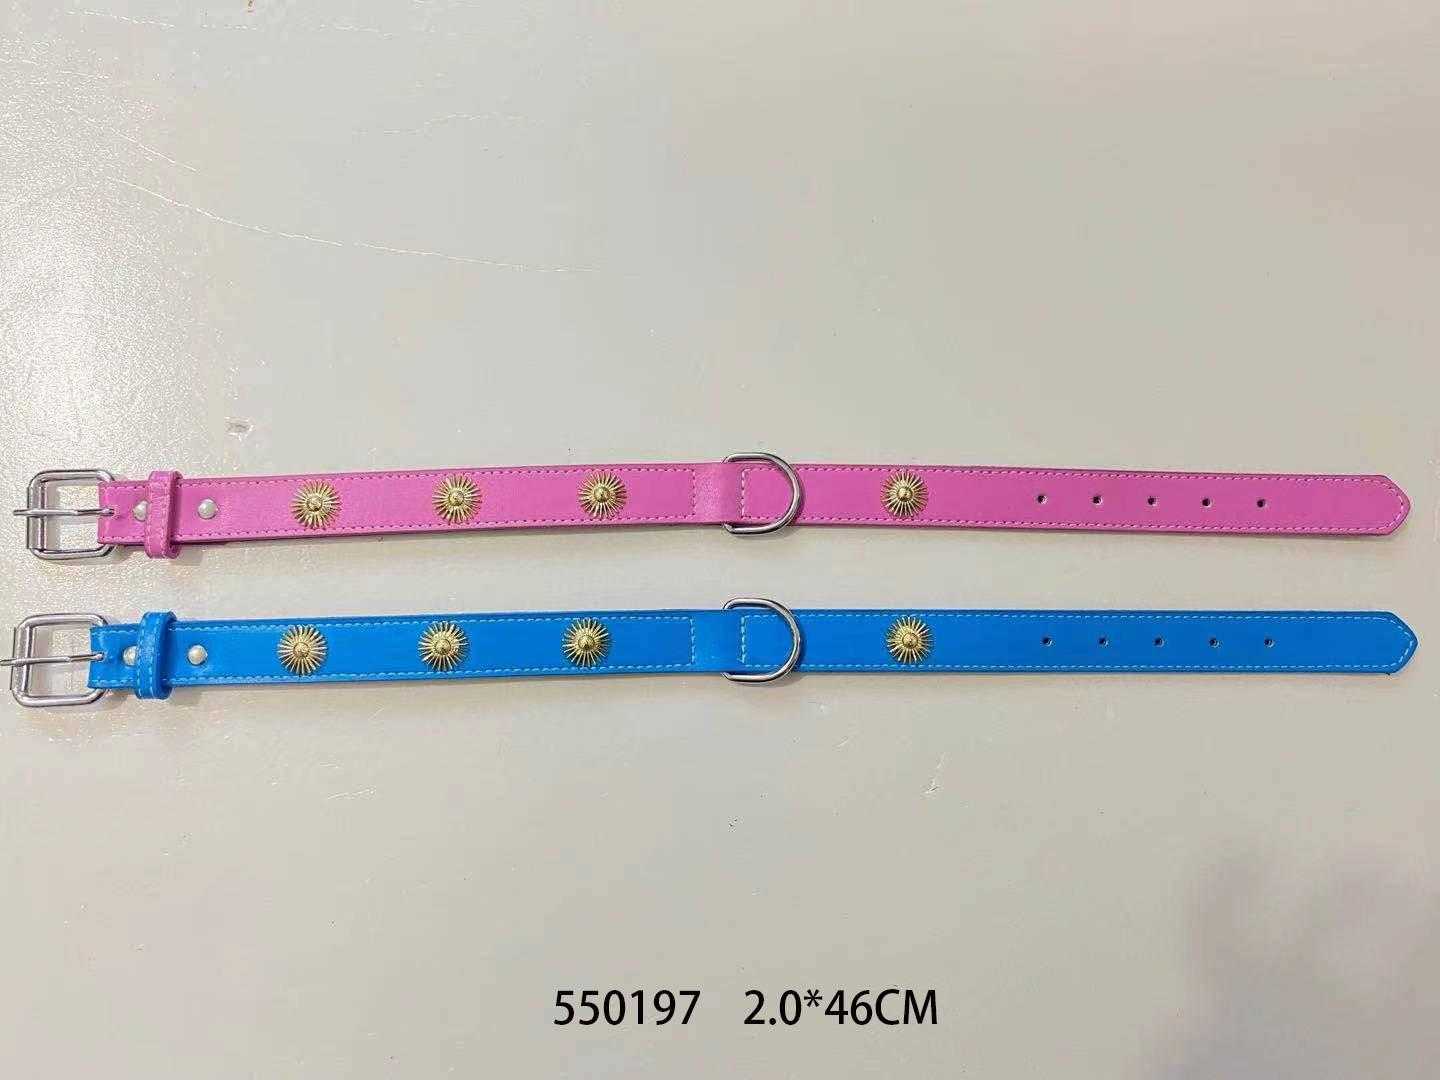 Collar - Dog collar - 2x46cm - 550197